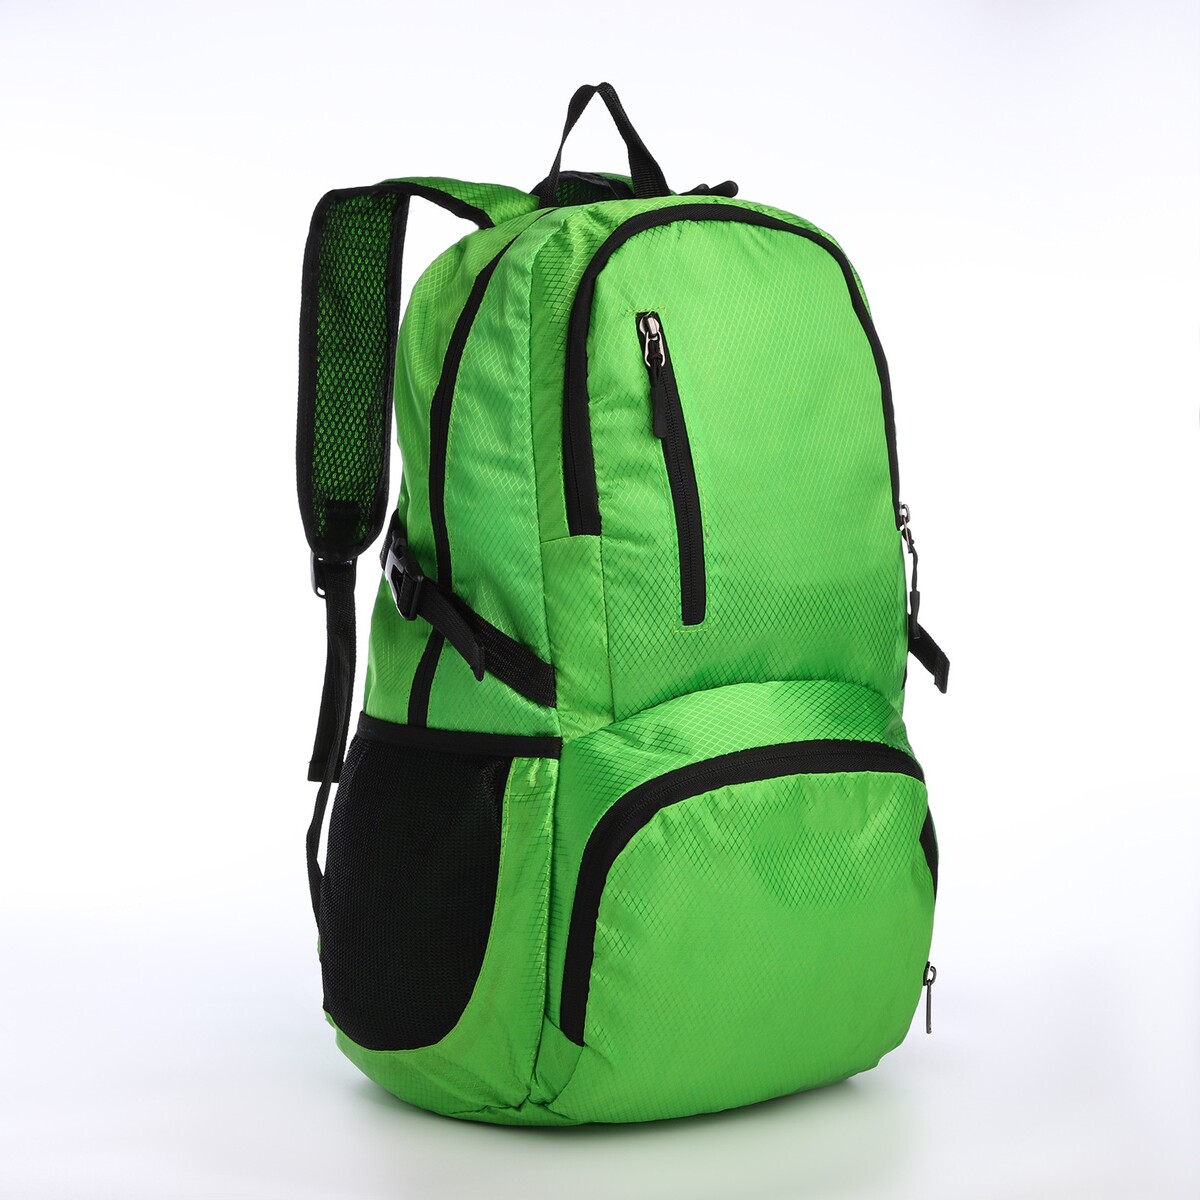 Рюкзак складной на молнии из текстиля, 5 карманов, цвет зеленый рюкзак nonstopika action бирюзовый складной